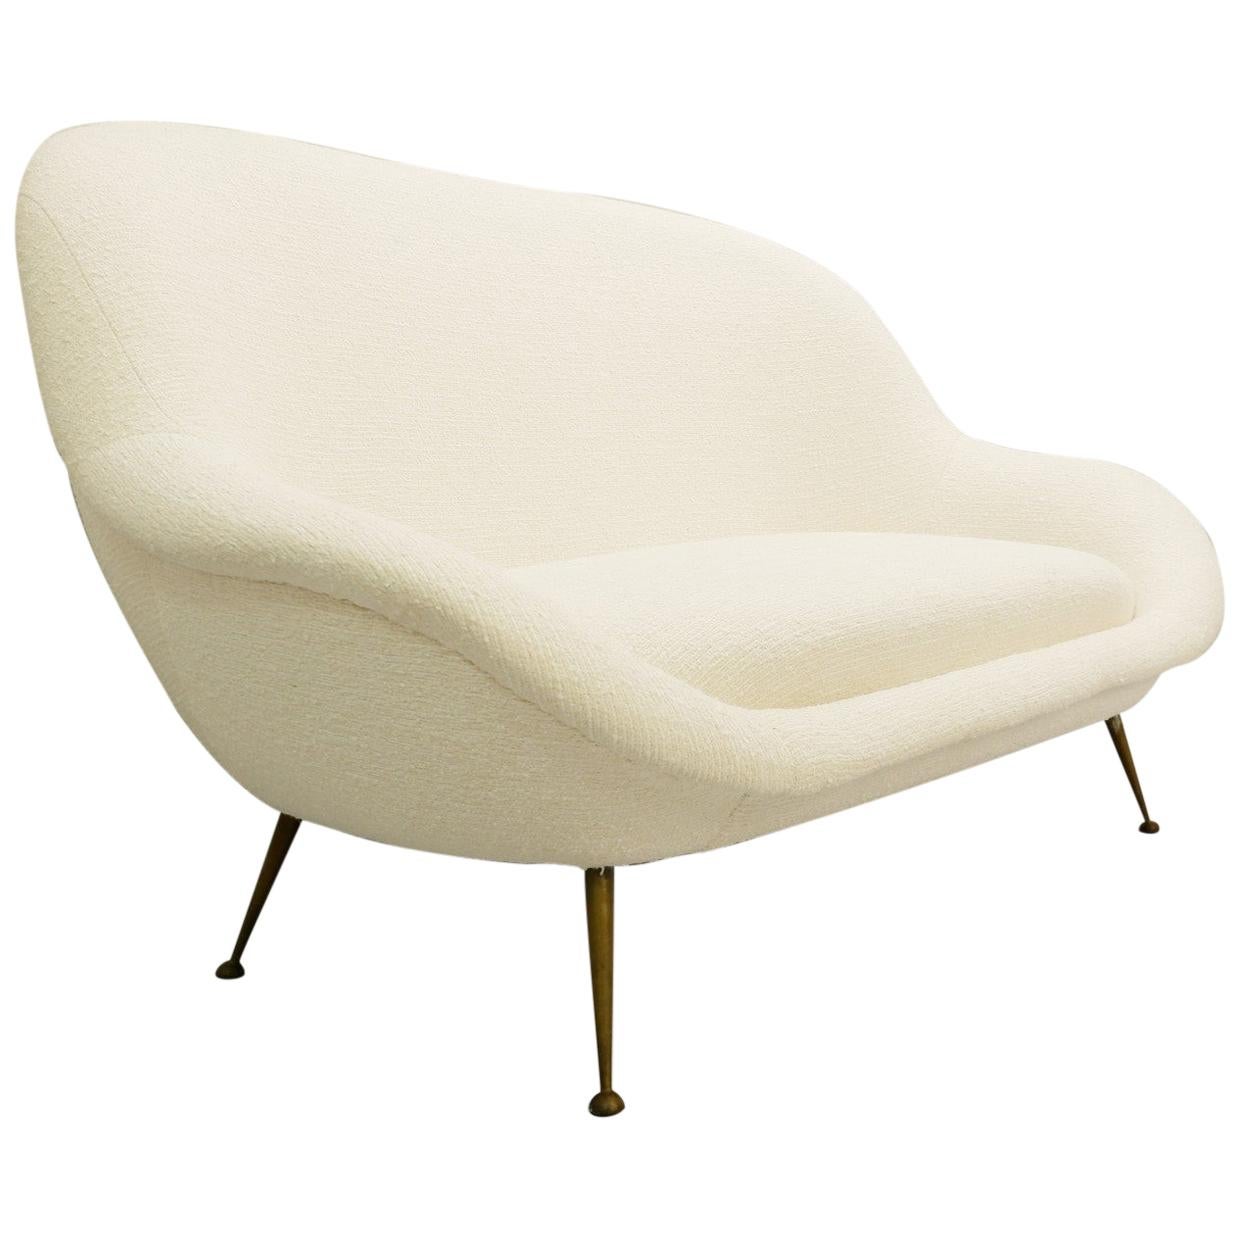 Italian Sofa New Cream White Upholstery